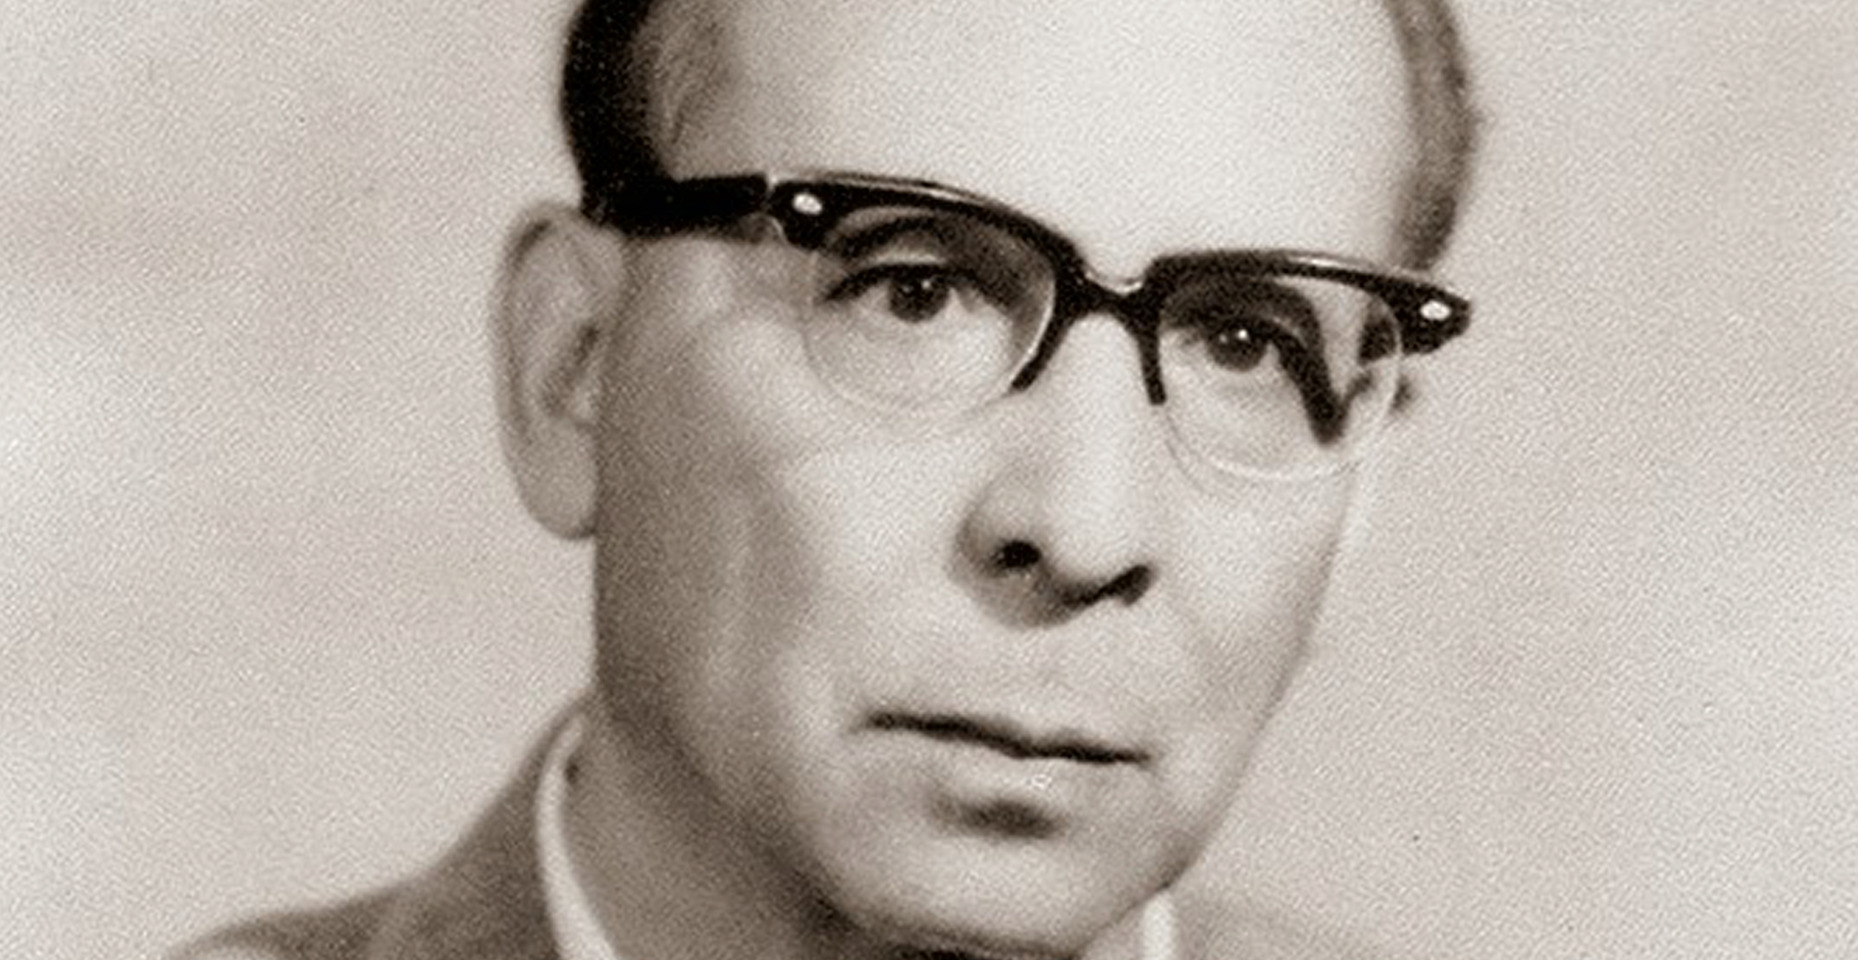 José F. Vázquez